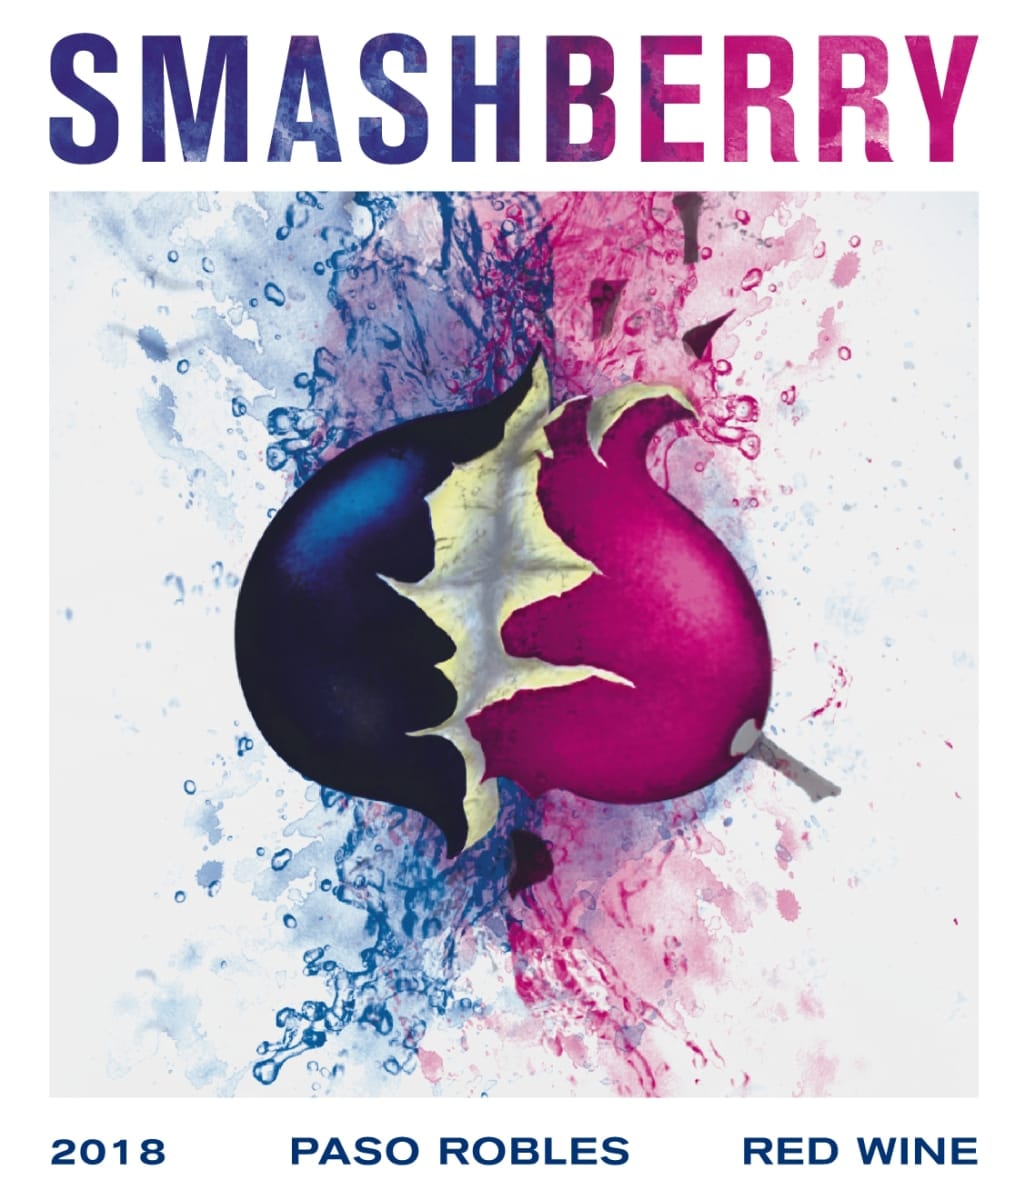 Rödvin 6-pack, Smashberry 2018, Paso Robles - USA (1 av 3)